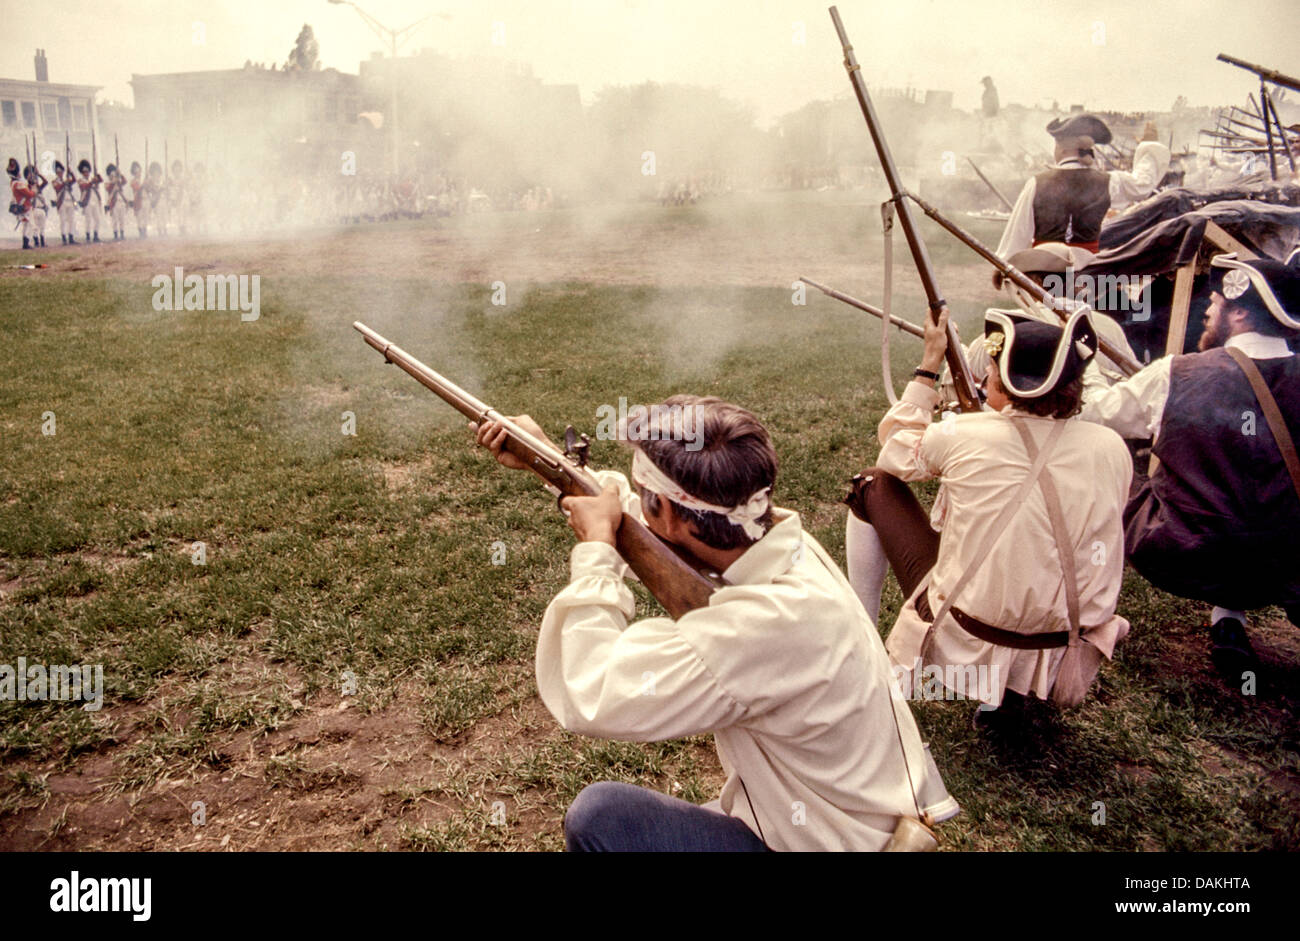 Le feu des mousquets patriotes défendant les fortifications en une reconstitution de la Bataille de Bunker Hill 1775, Charlestown, Massachusetts Banque D'Images